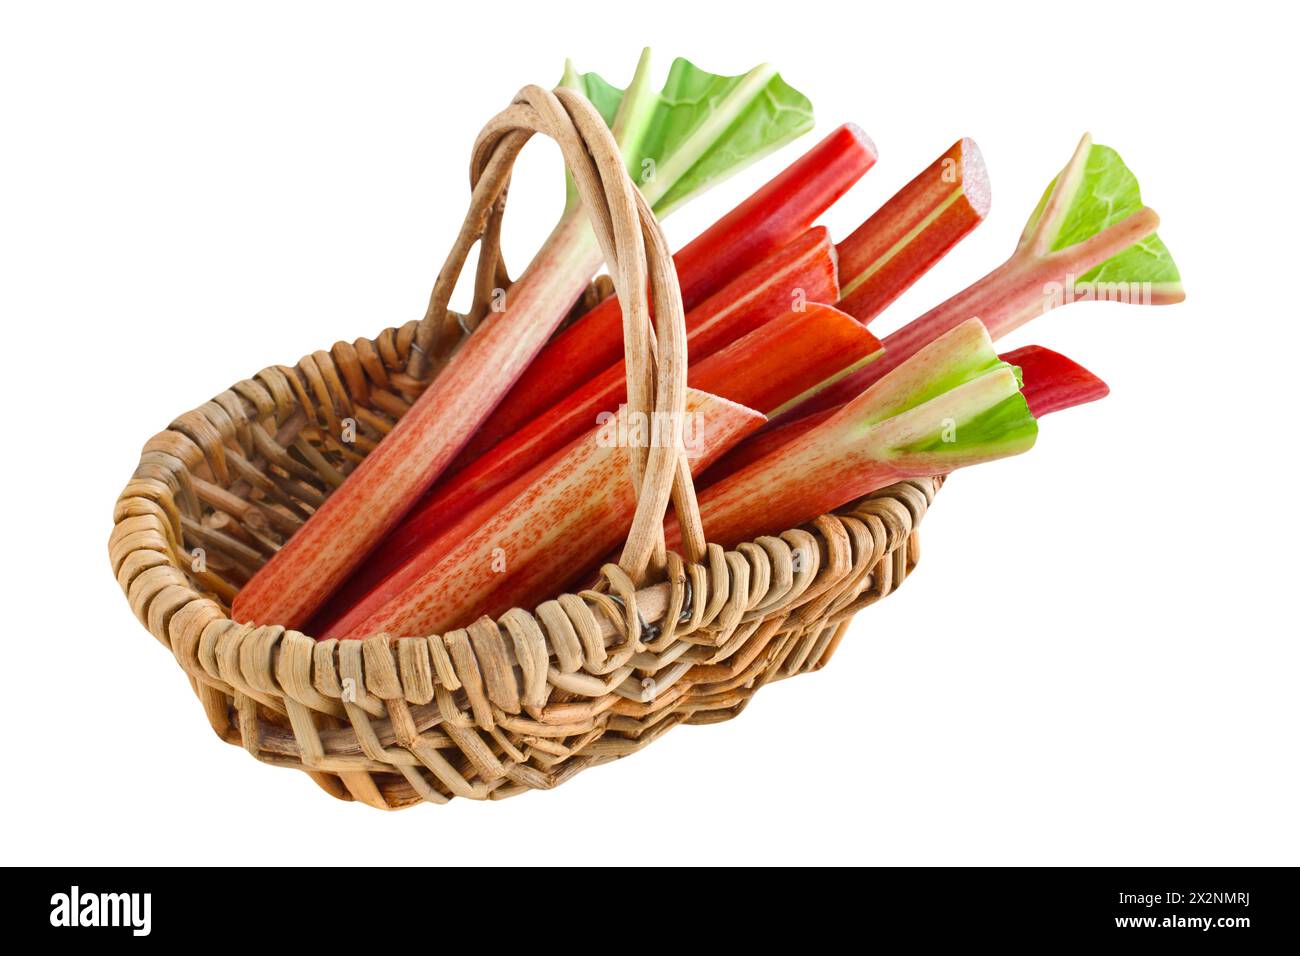 Fresh rhubarb and basket isolated on white background Stock Photo